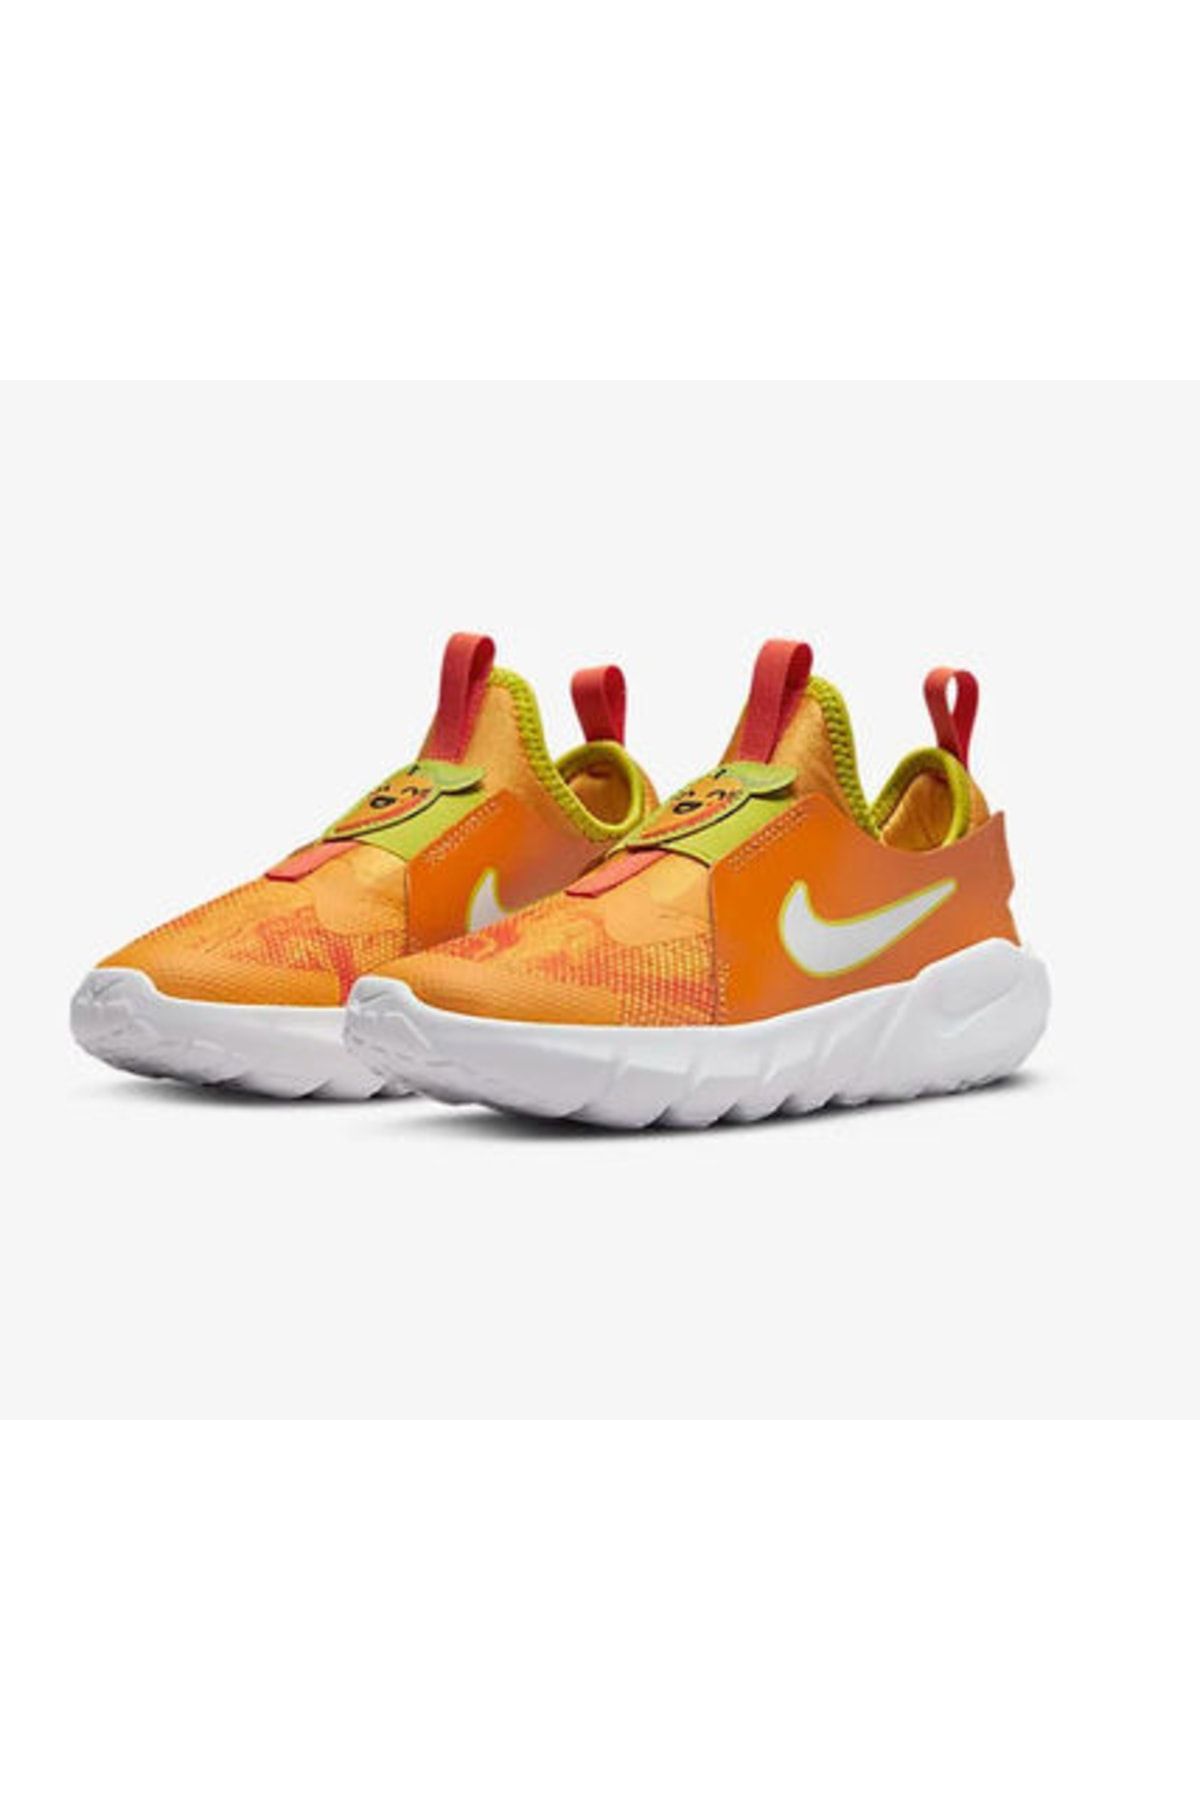 Nike Little Kids' Flex Runner 2 Lil' Fruits Running Shoes Çocuk Ayakkabı - Dm4207-800